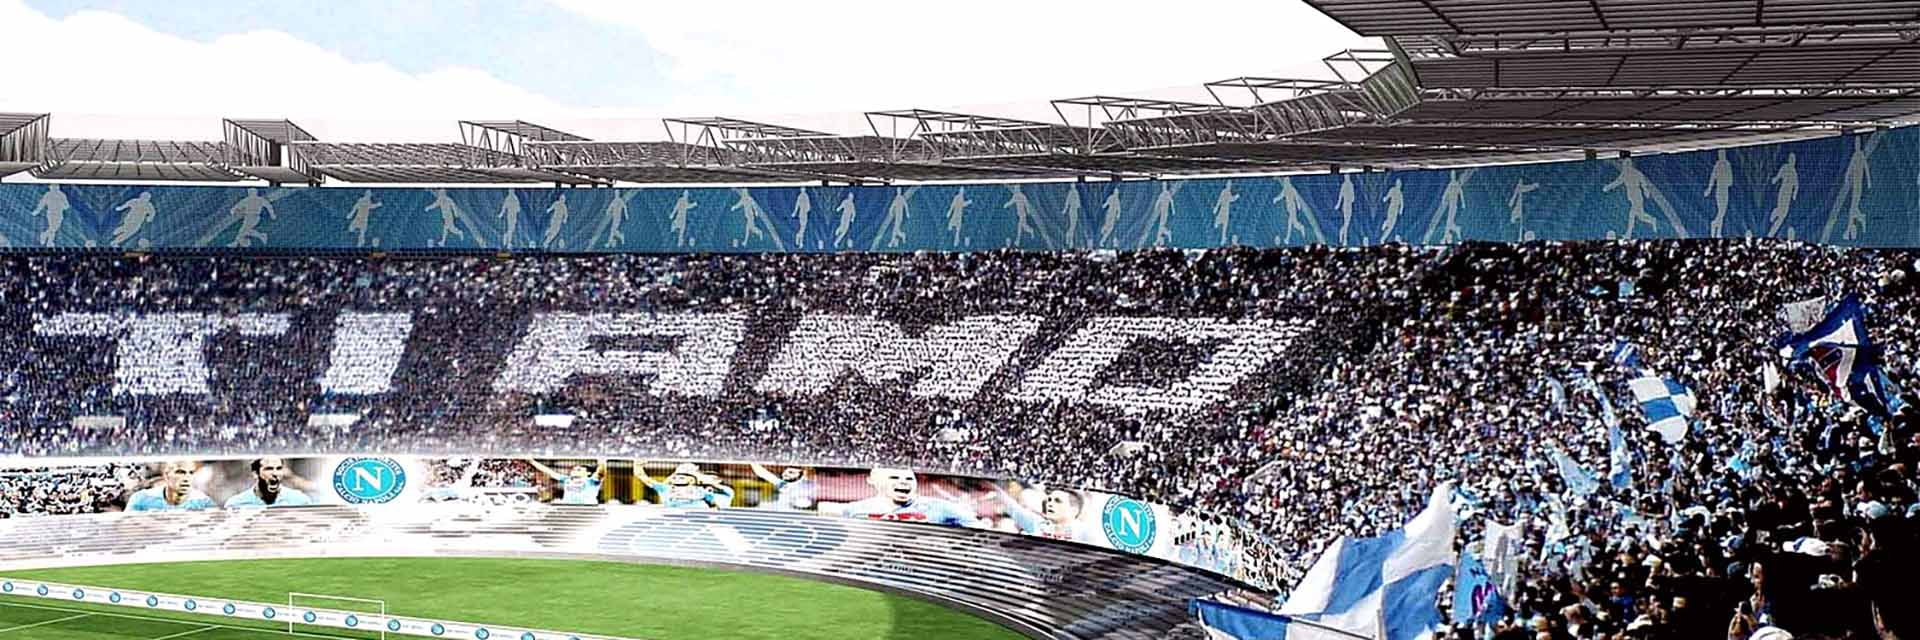 SSC Napoli - Empoli FC, 3 novembreà 0:00